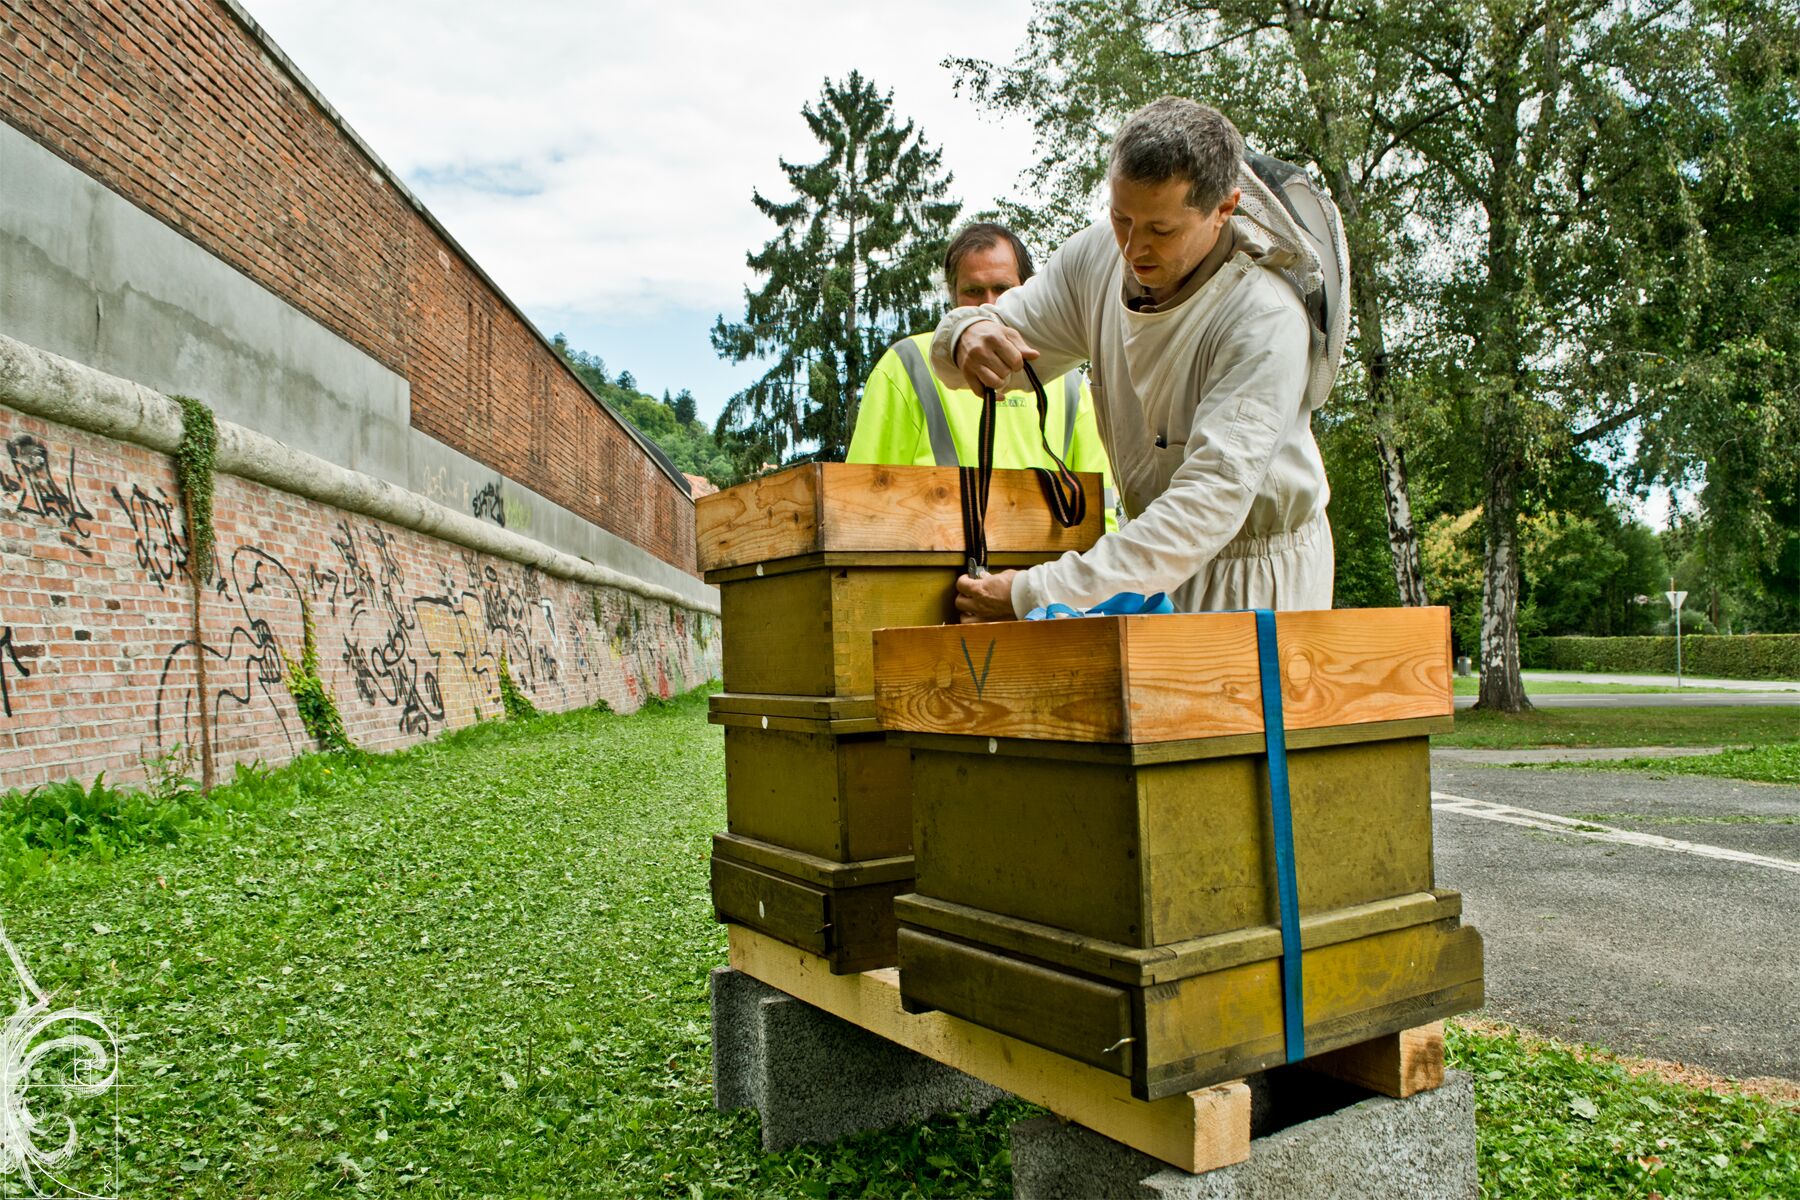 Unsere Bienenstöcke werden im Stadtpark aufgestellt.